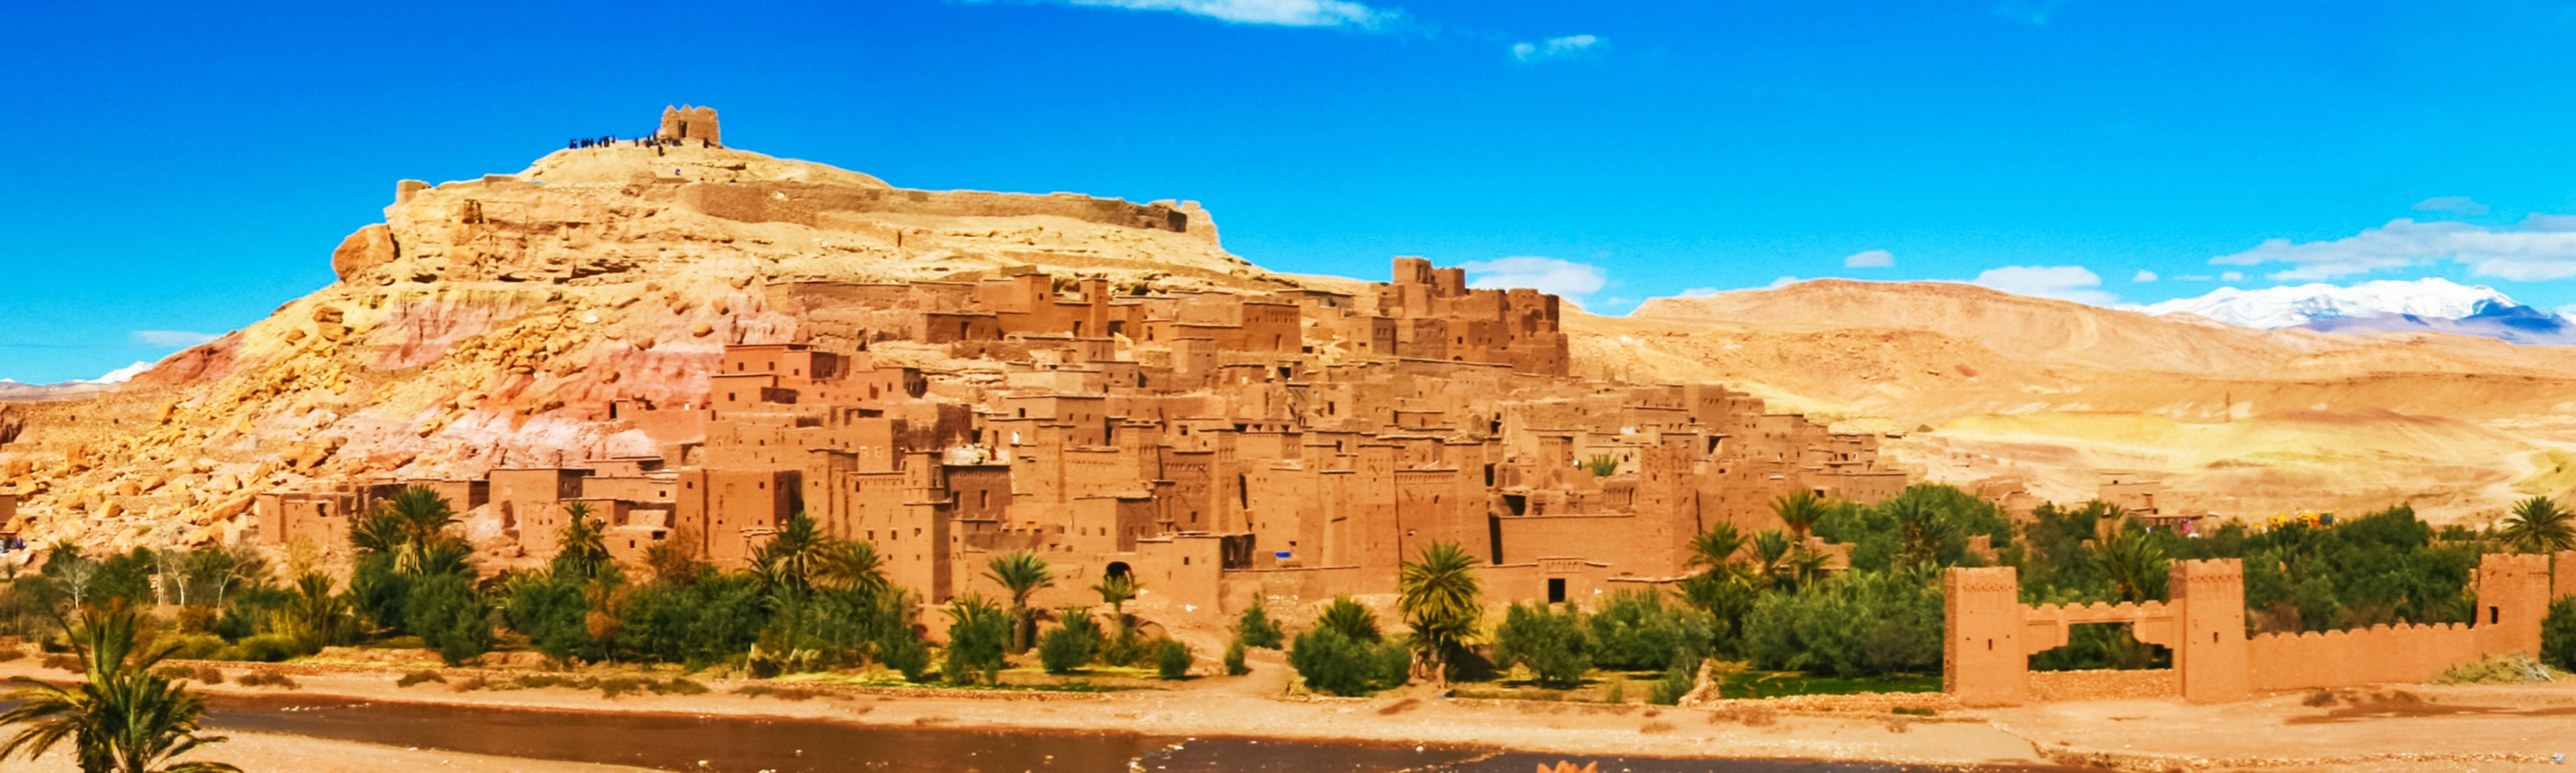 Une ville du désert au Maroc